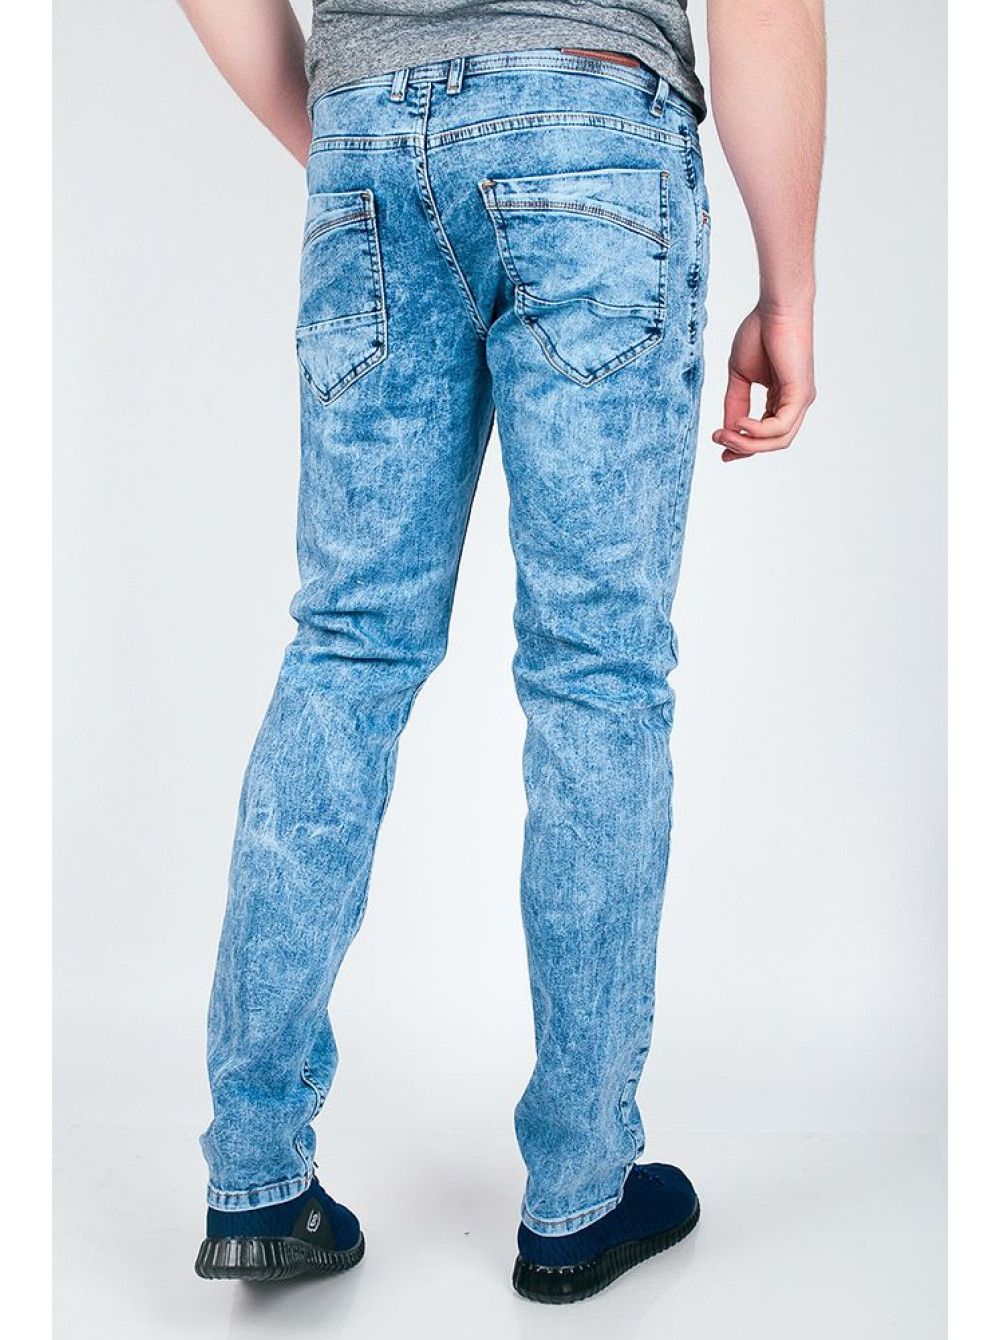 Голубые мужские джинсы купить. Голубые джинсы мужские. Джинсы светосиние мужские. Светло синие джинсы мужские. Светло голубые джинсы мужские.